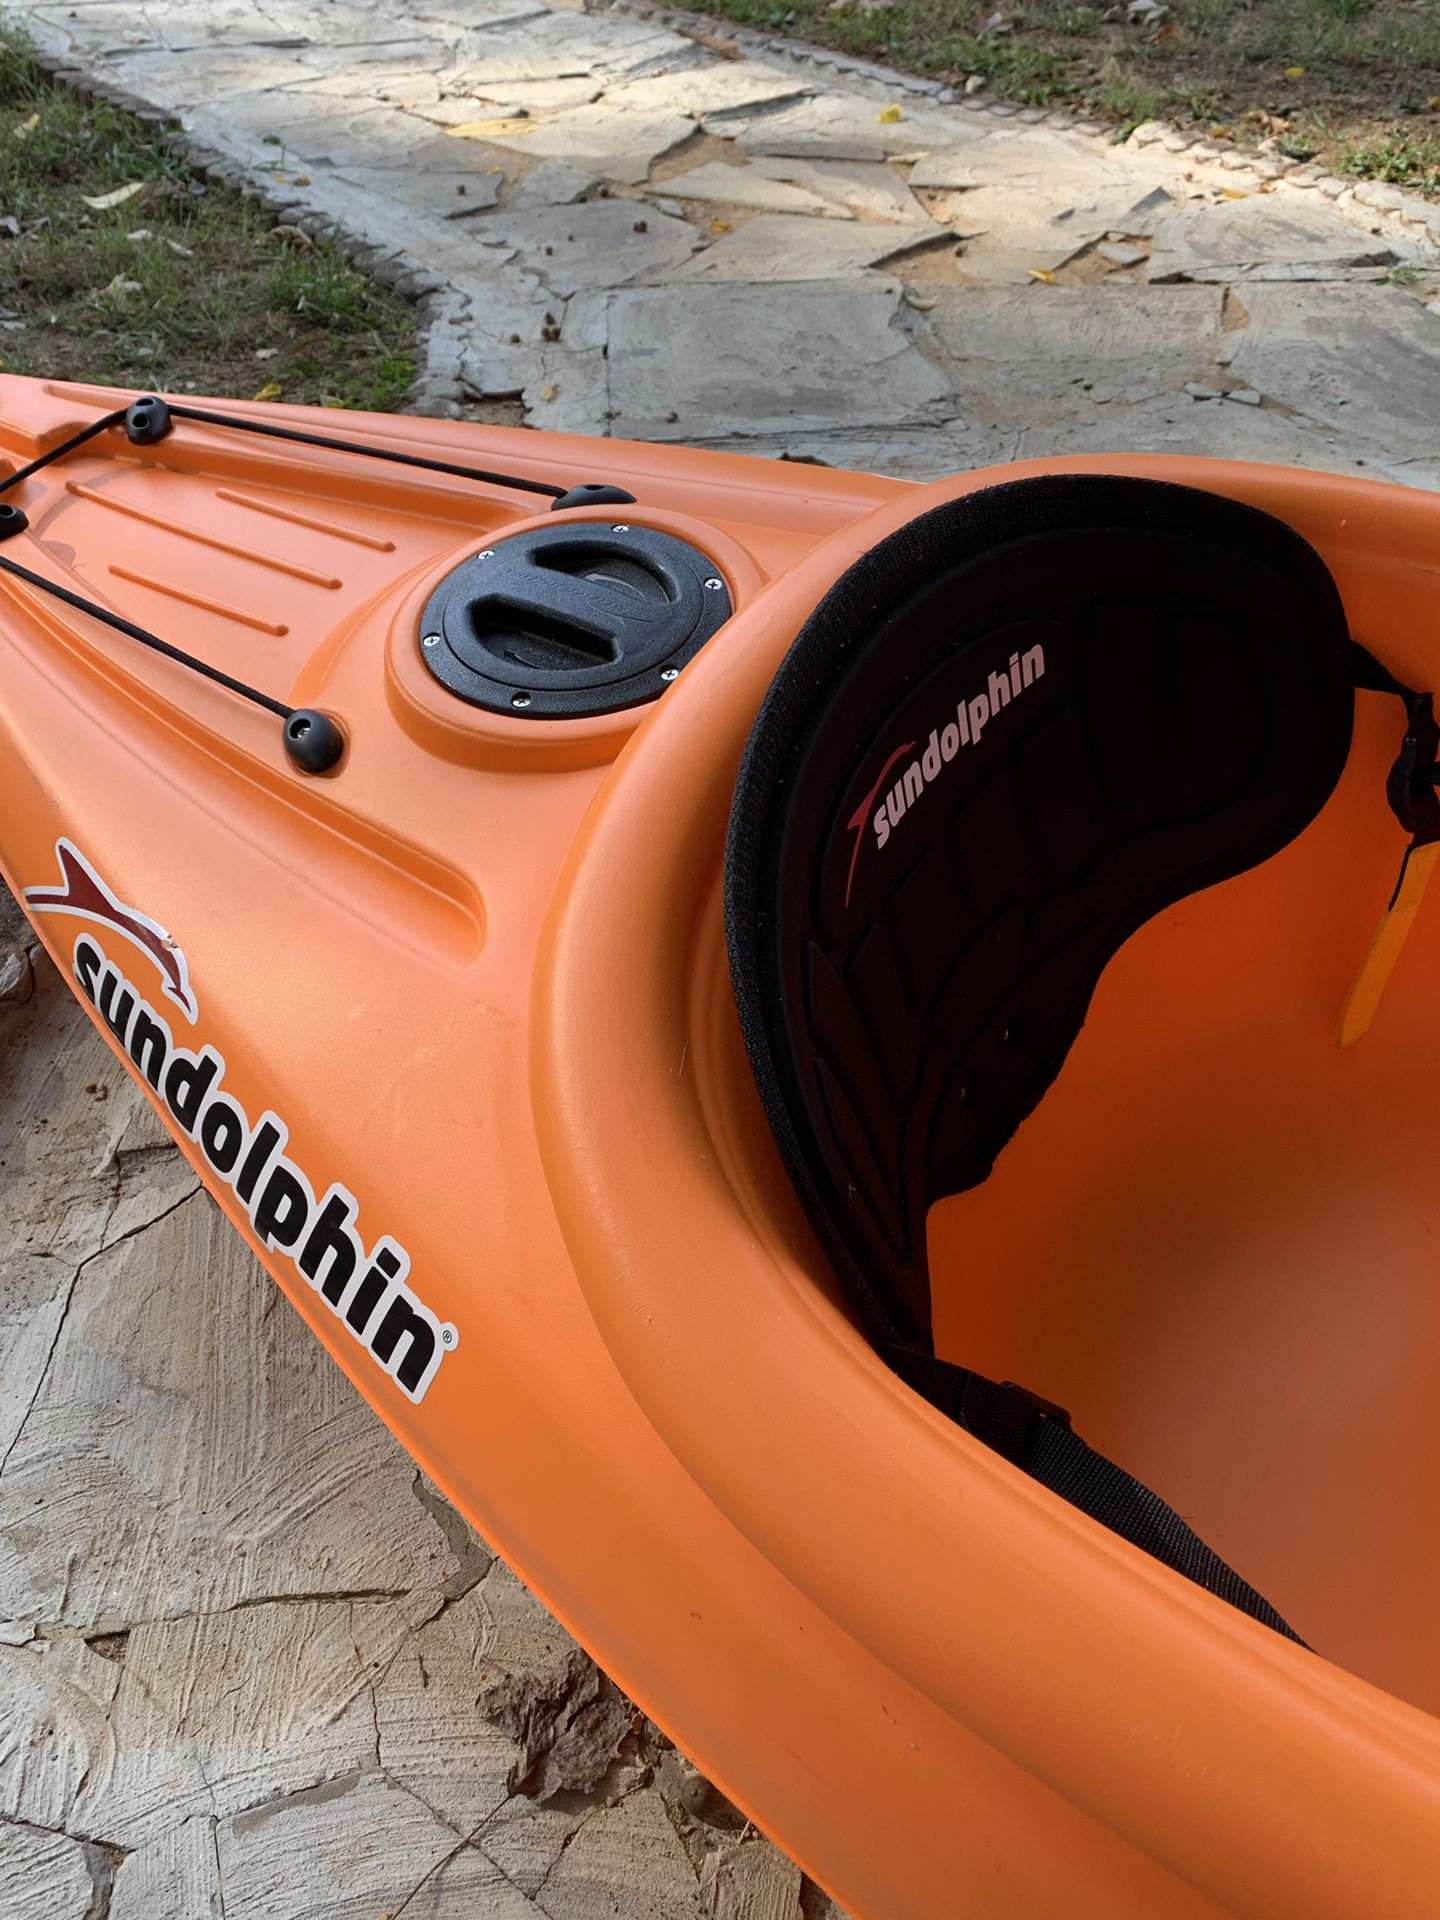 Sundolphin SS kayak 8”